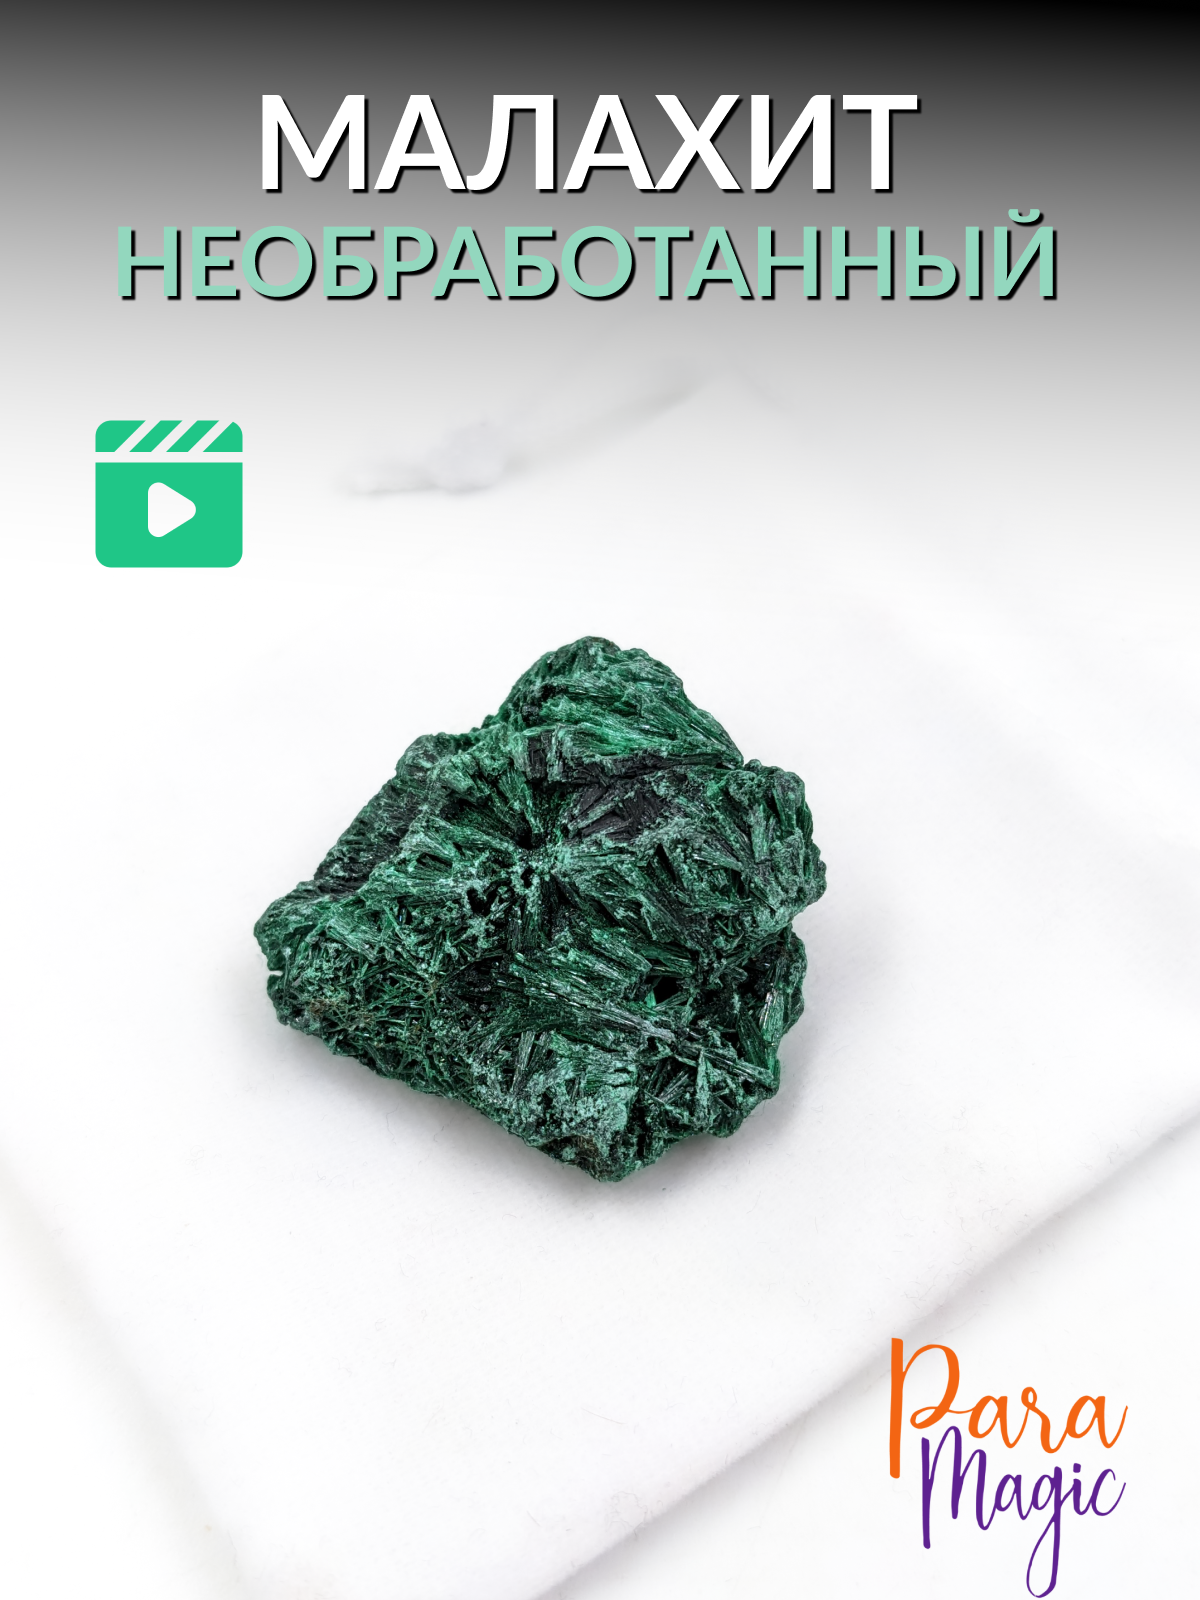 Малахит необработанный, натуральный камень,1 шт, фракция 2,5-5см.